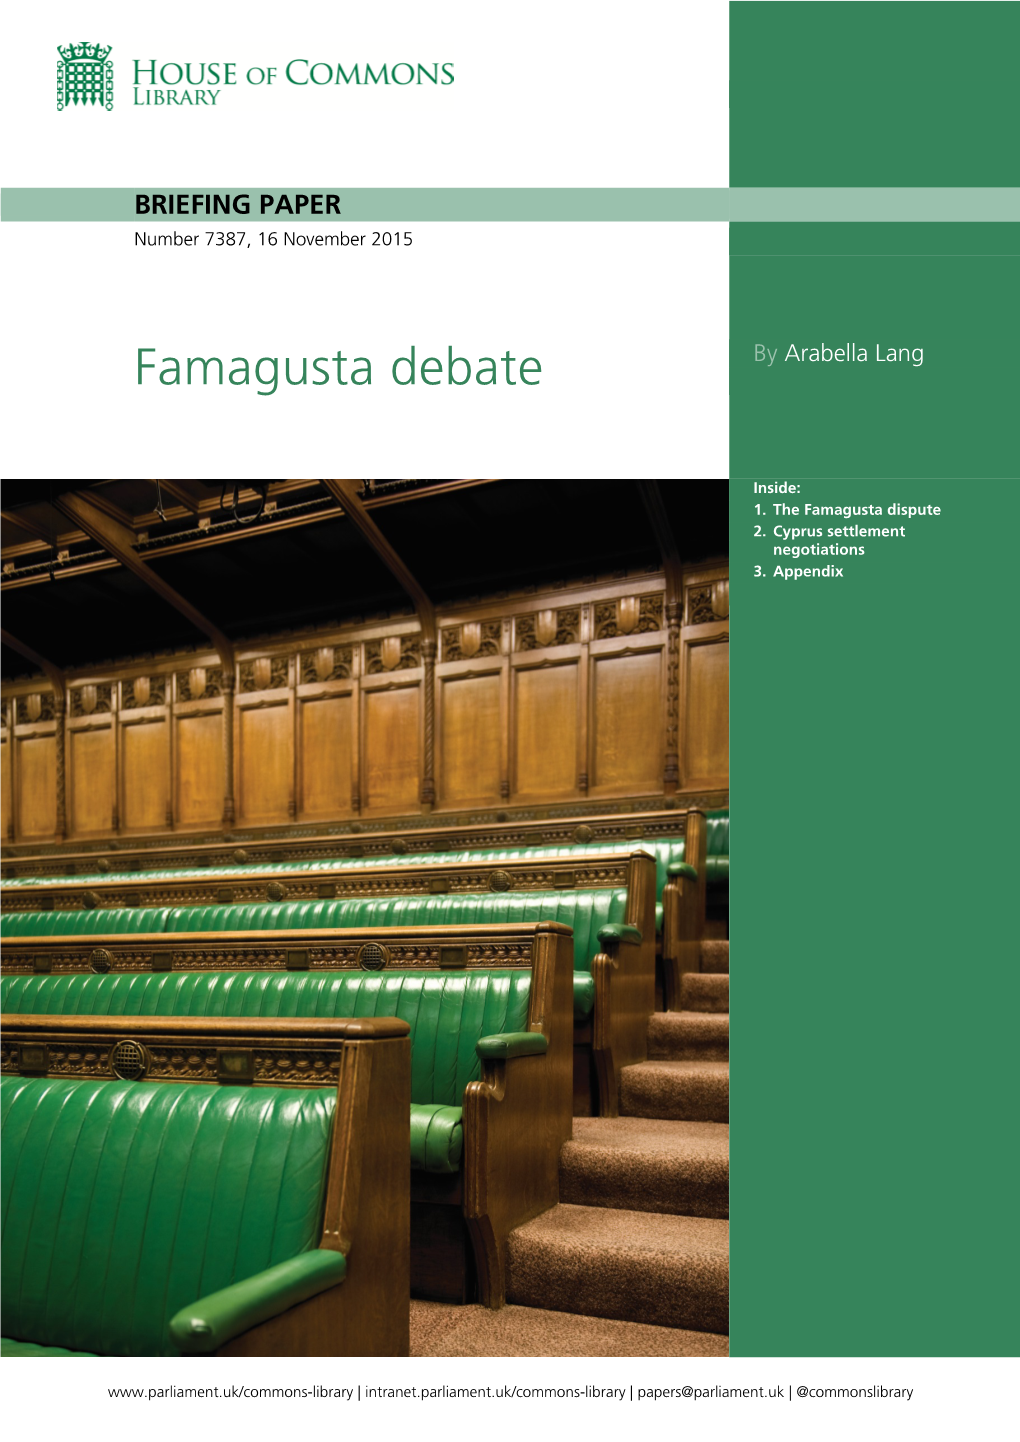 Famagusta Debate